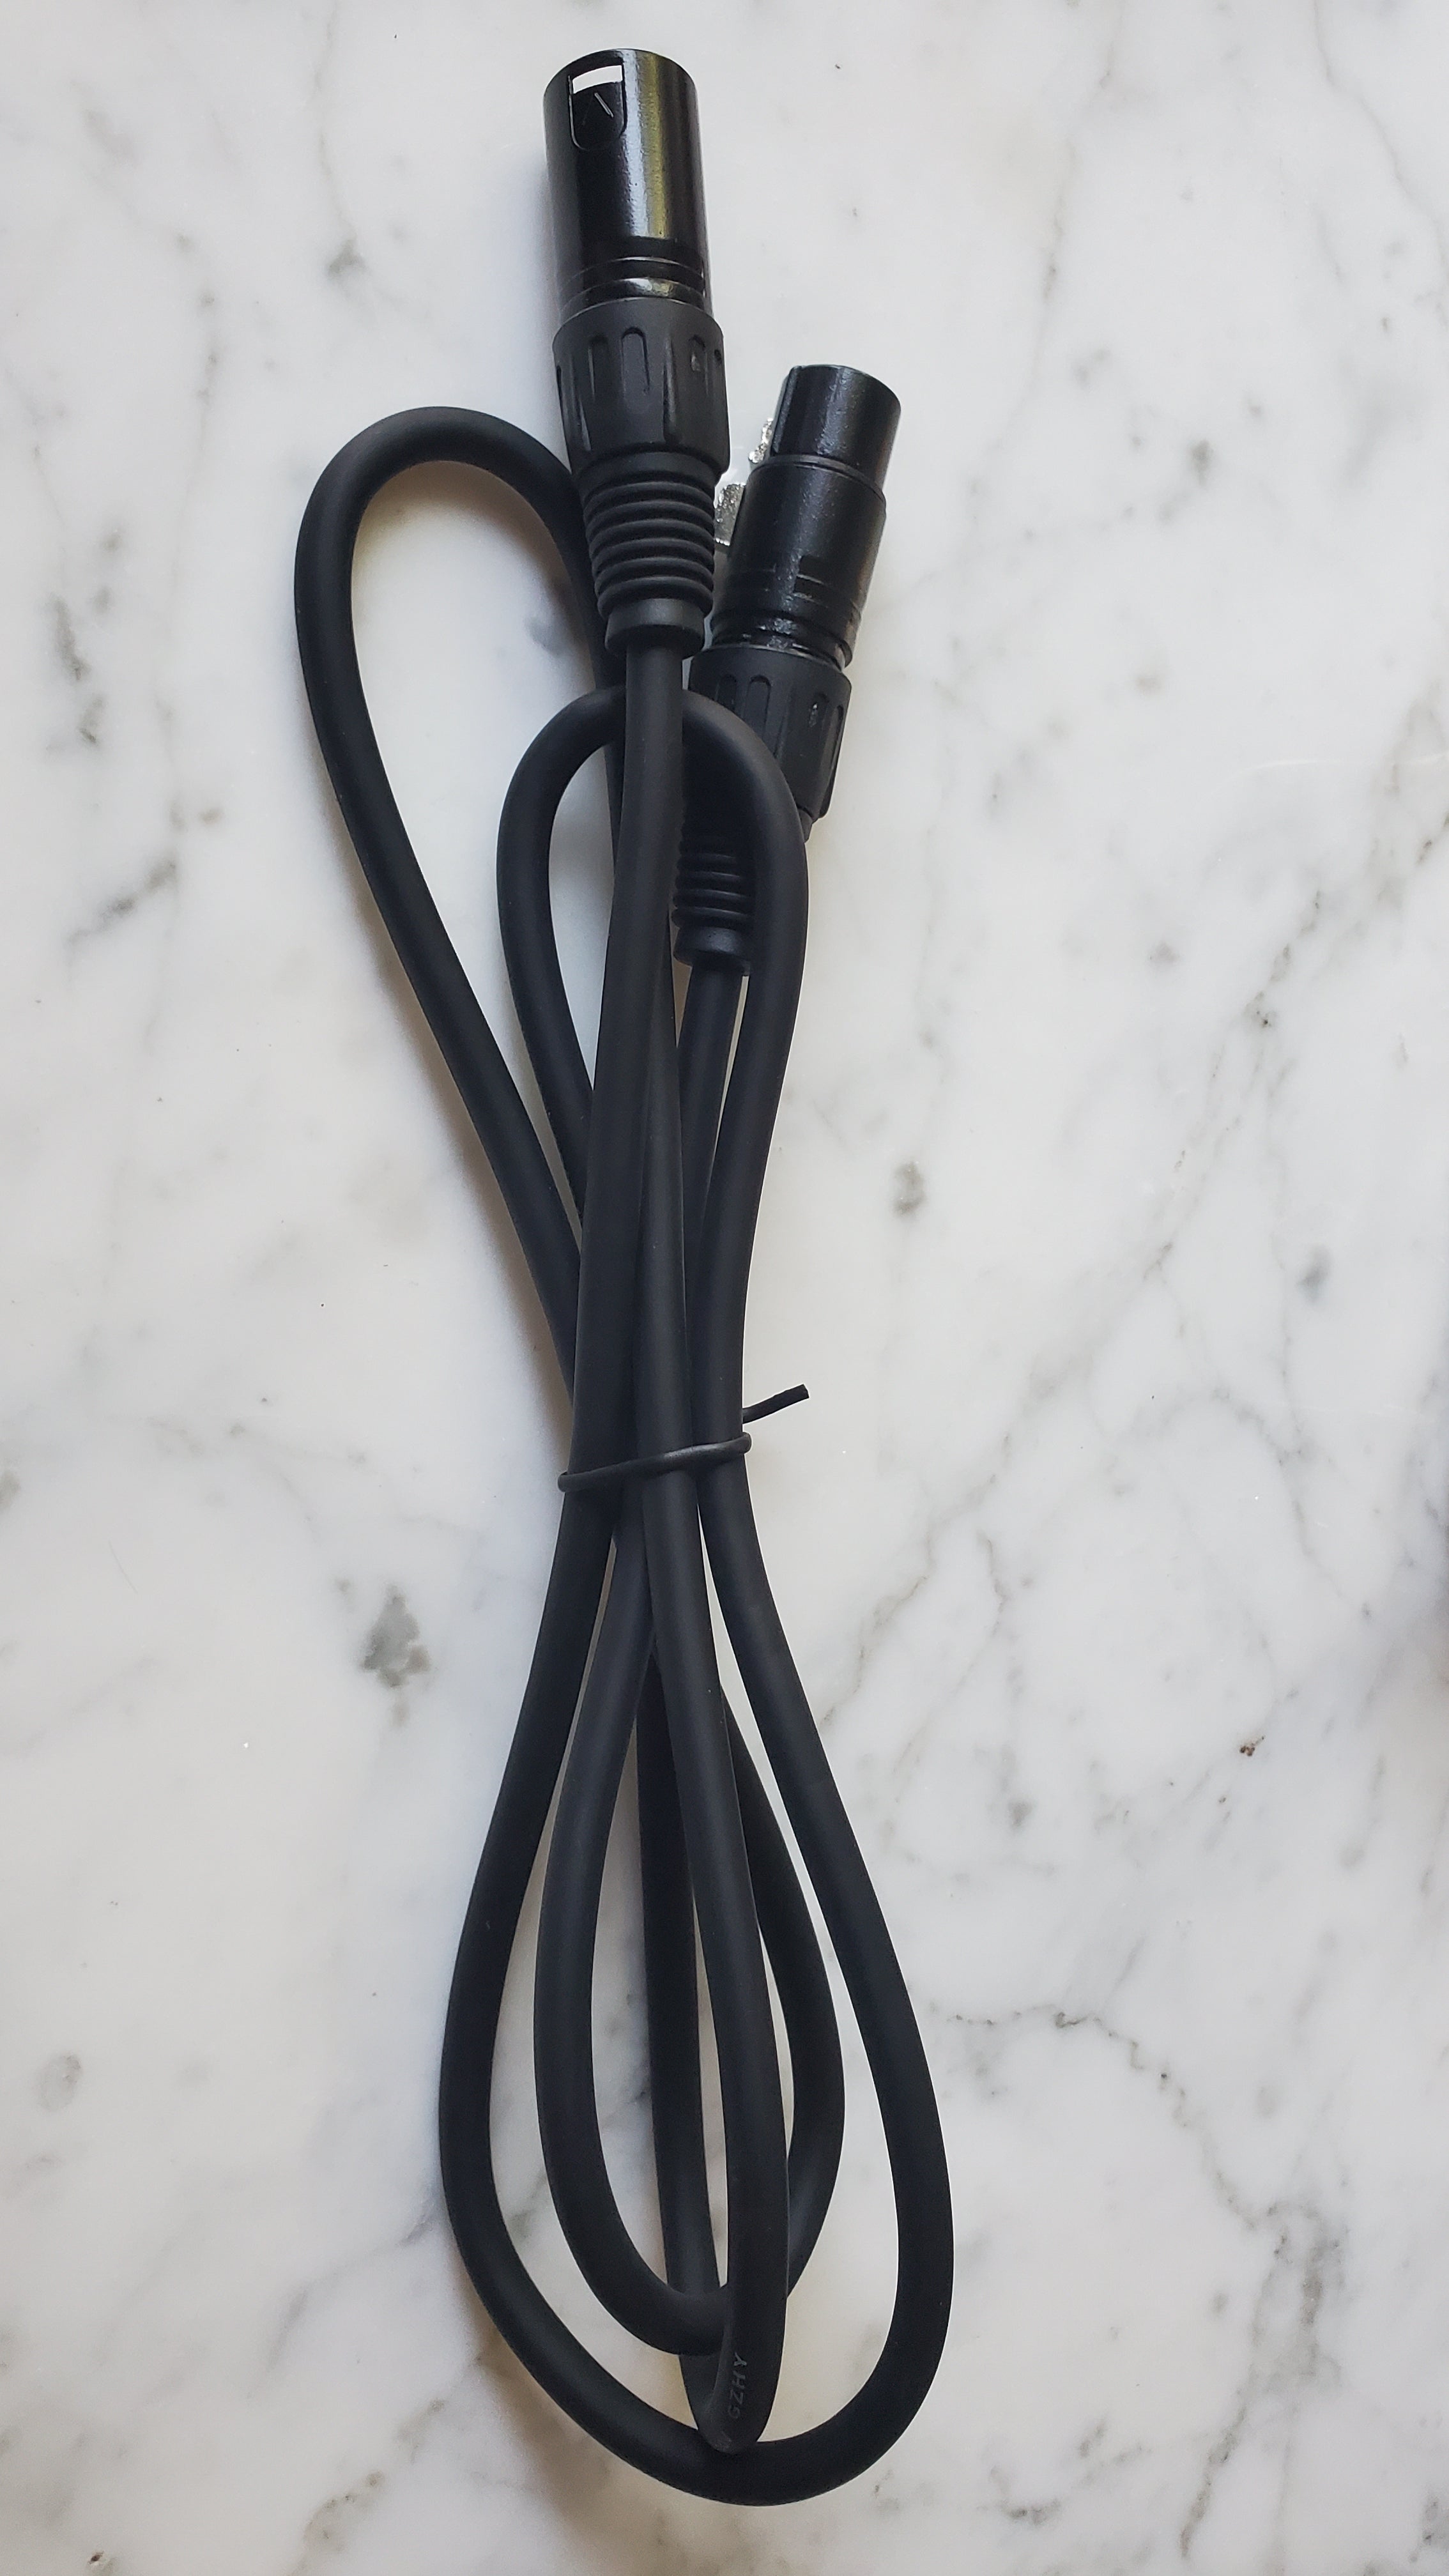 4x "3-Pin DMX Cable" bundle, 5 foot each